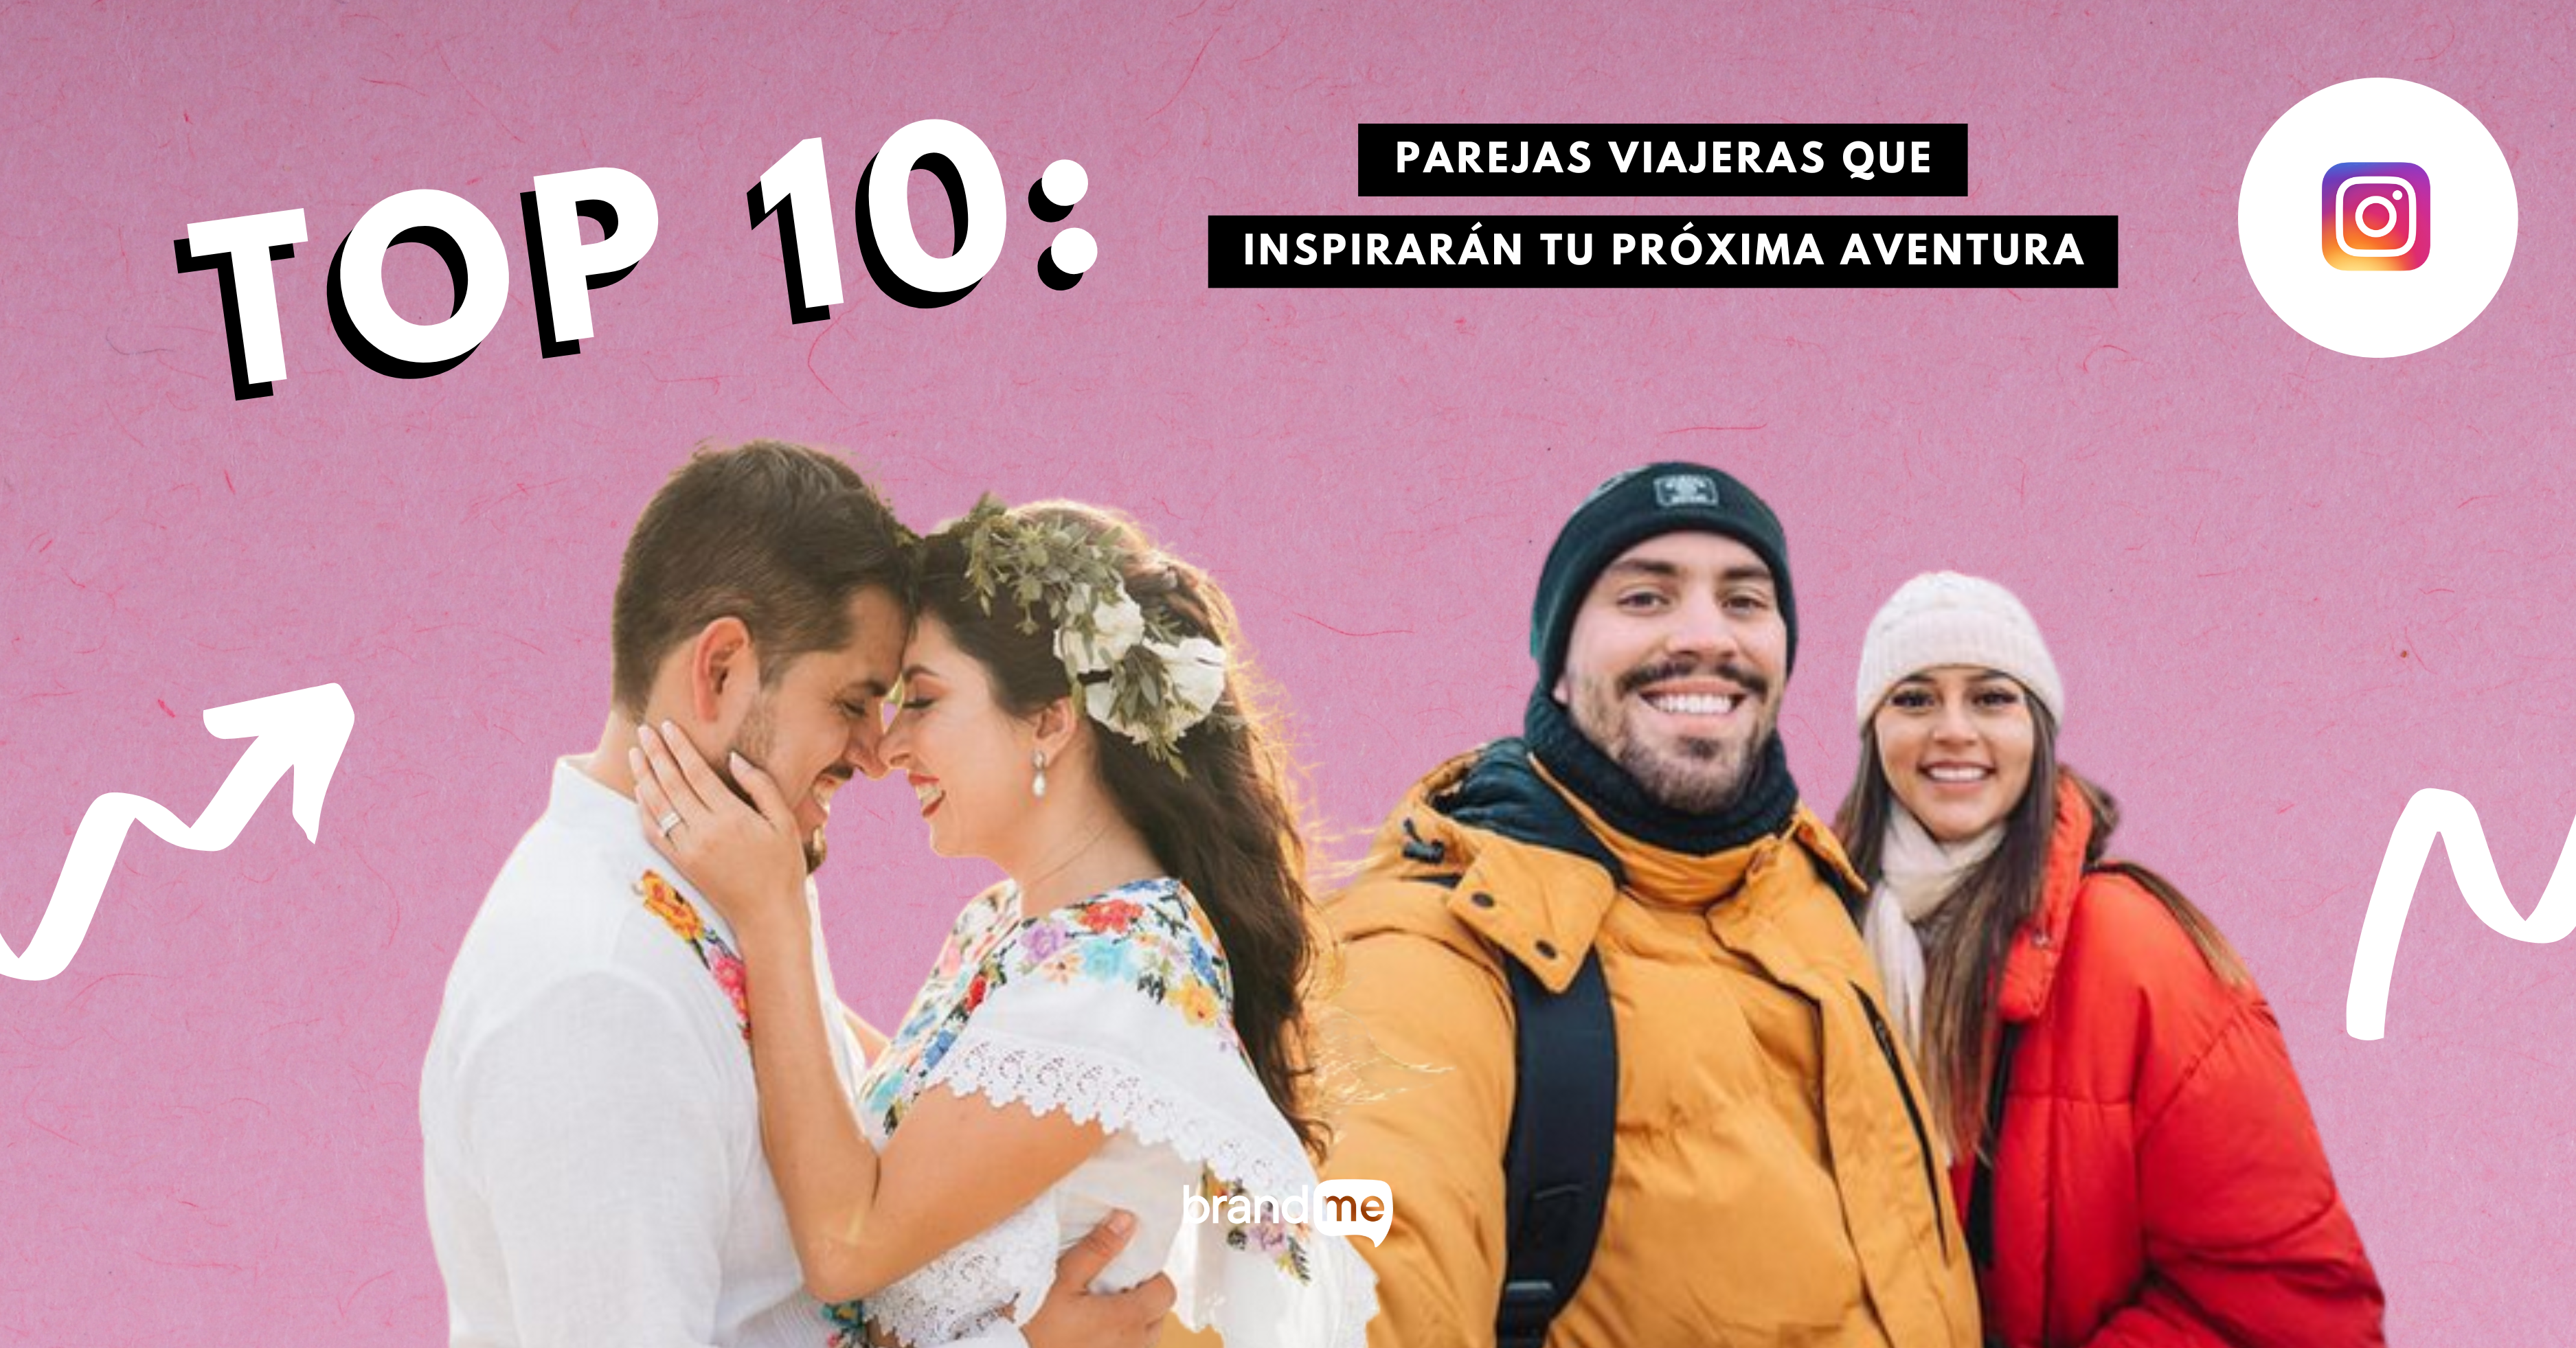 top-10-parejas-viajeras-que-inspiraran-tu-proxima-aventura-brandme-influencer-marketing